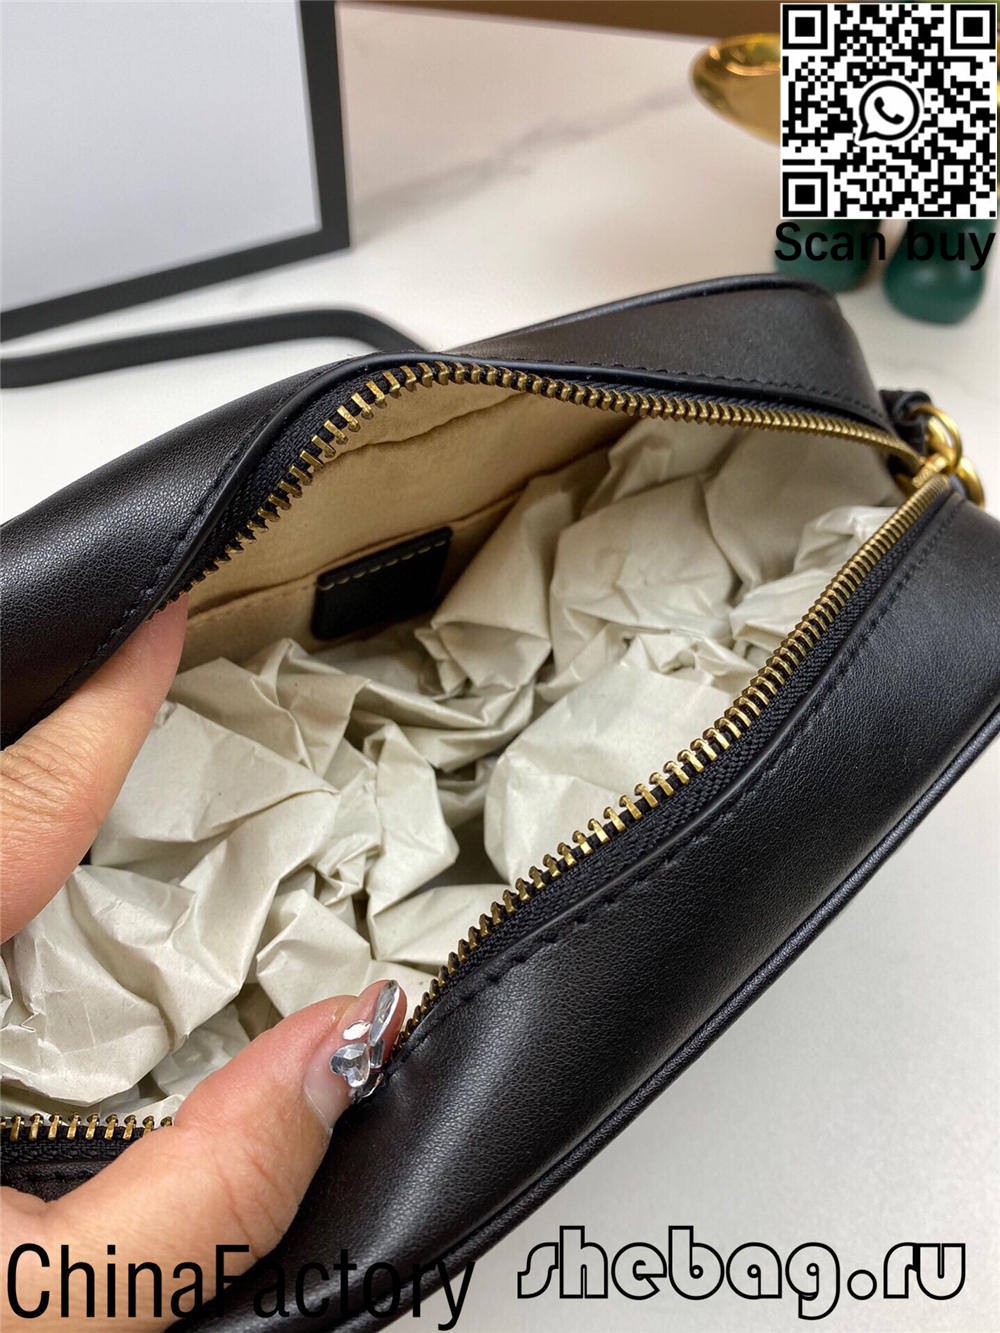 Къде мога да намеря доставчик на реплика на GG чанта в Обединеното кралство? (2022 актуализиран) - Онлайн магазин за фалшива чанта Louis Vuitton с най-добро качество, дизайнерска чанта реплика ru